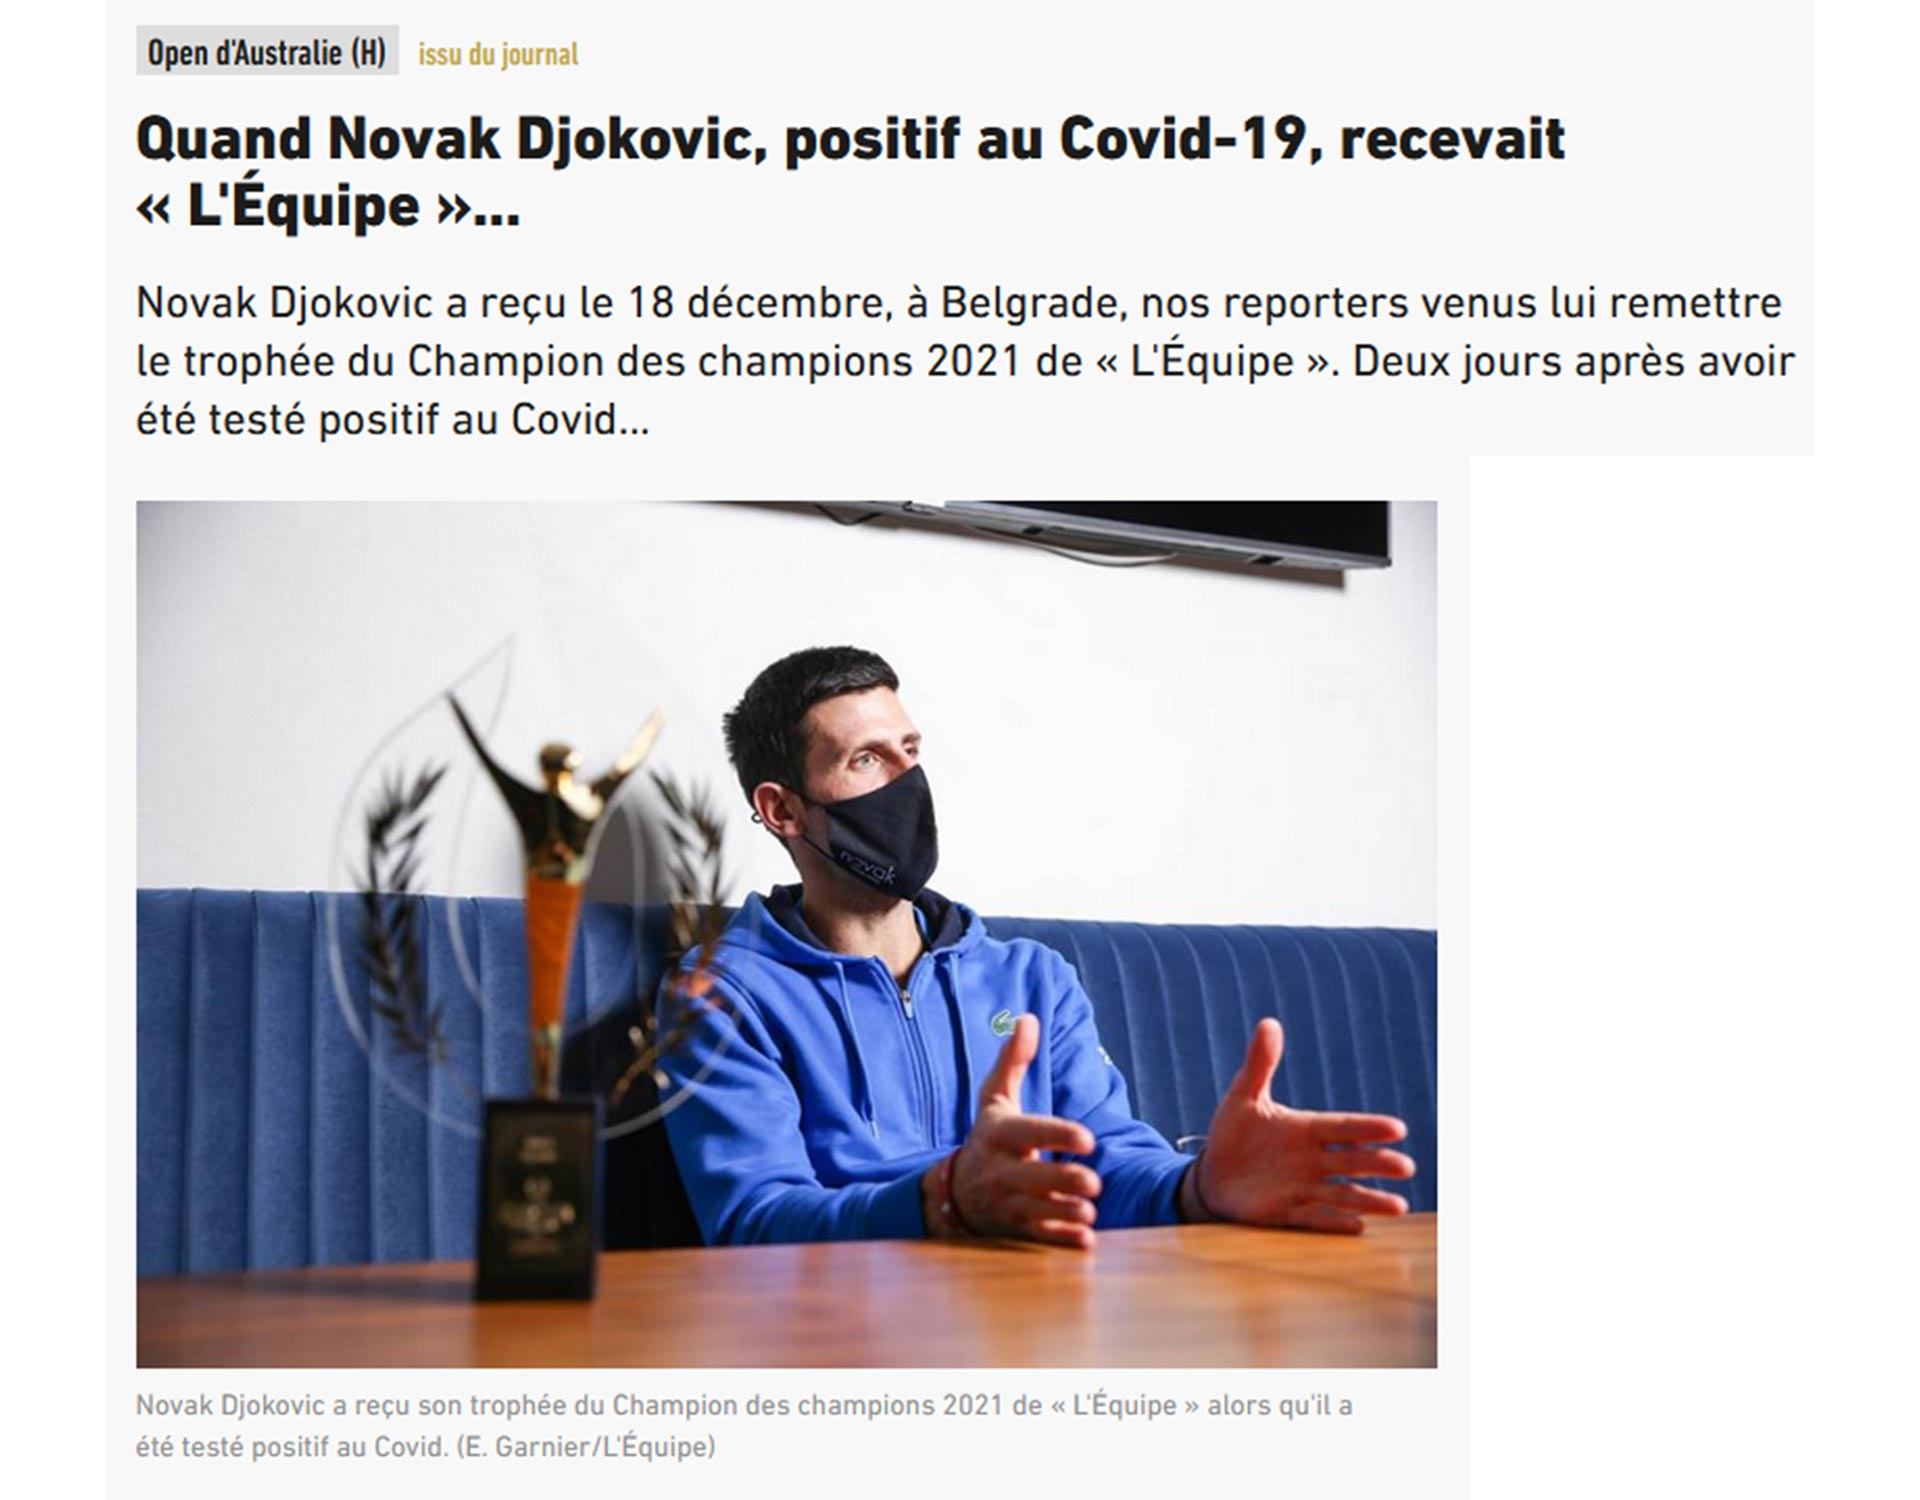 El periodista Franck Ramella dio detalles de su encuentro con Novak Djokovic (L'Equipe)